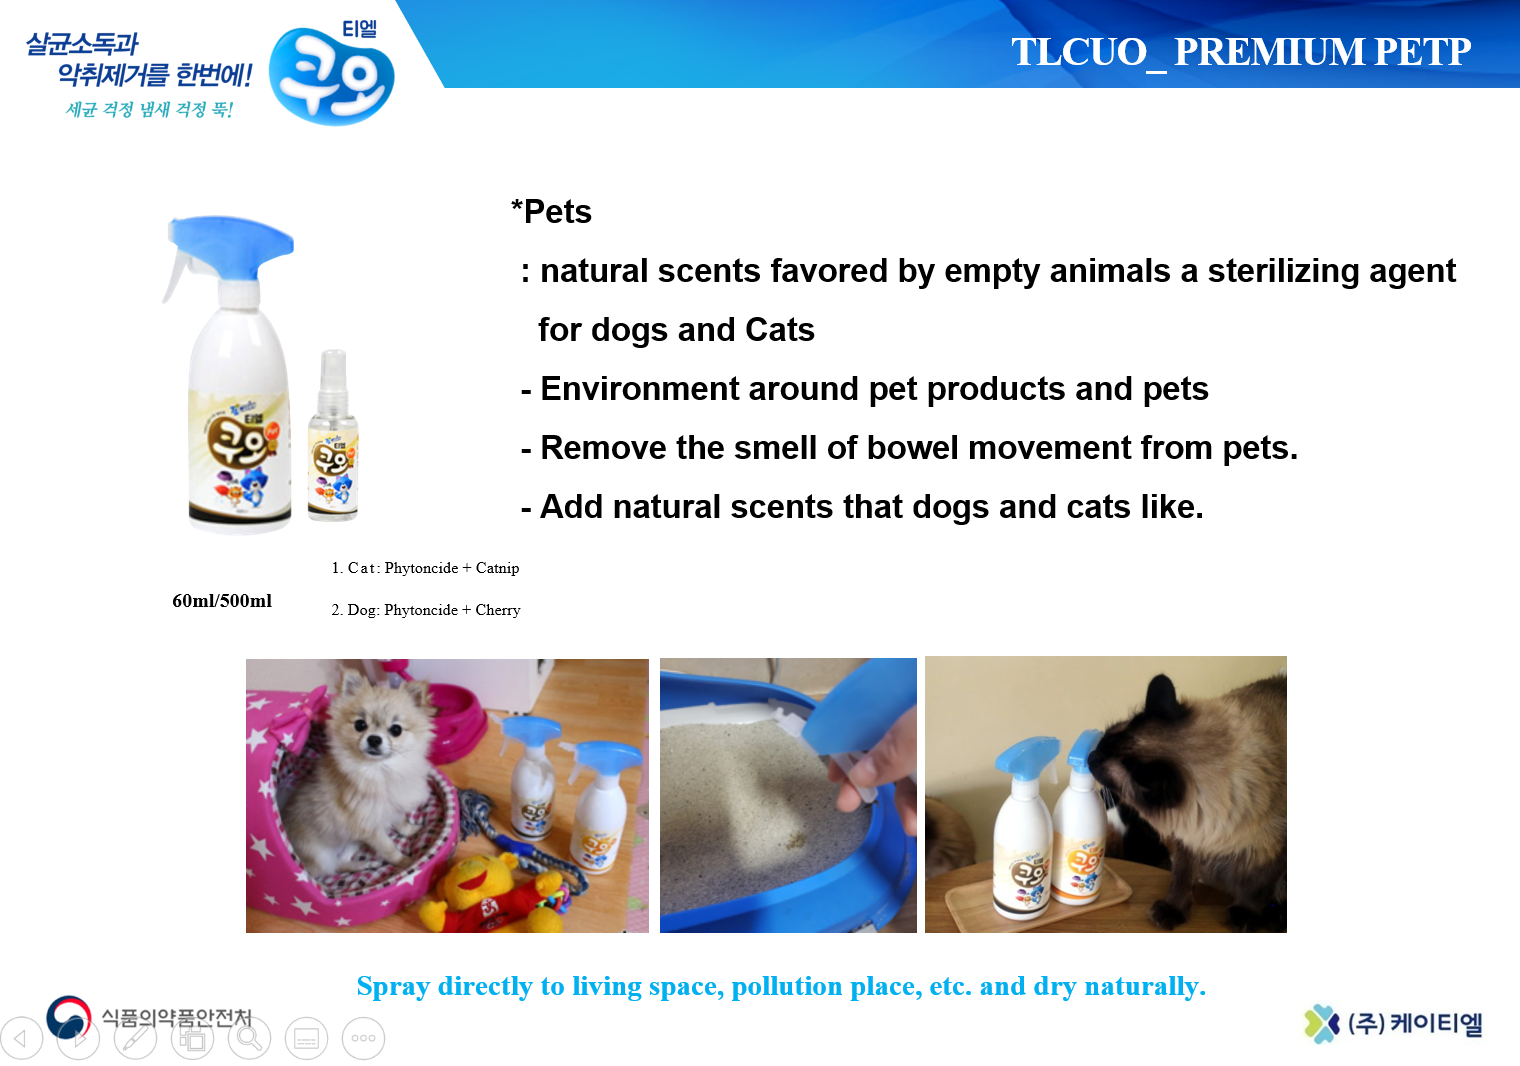 TLCUO Pet Brochure Img 2